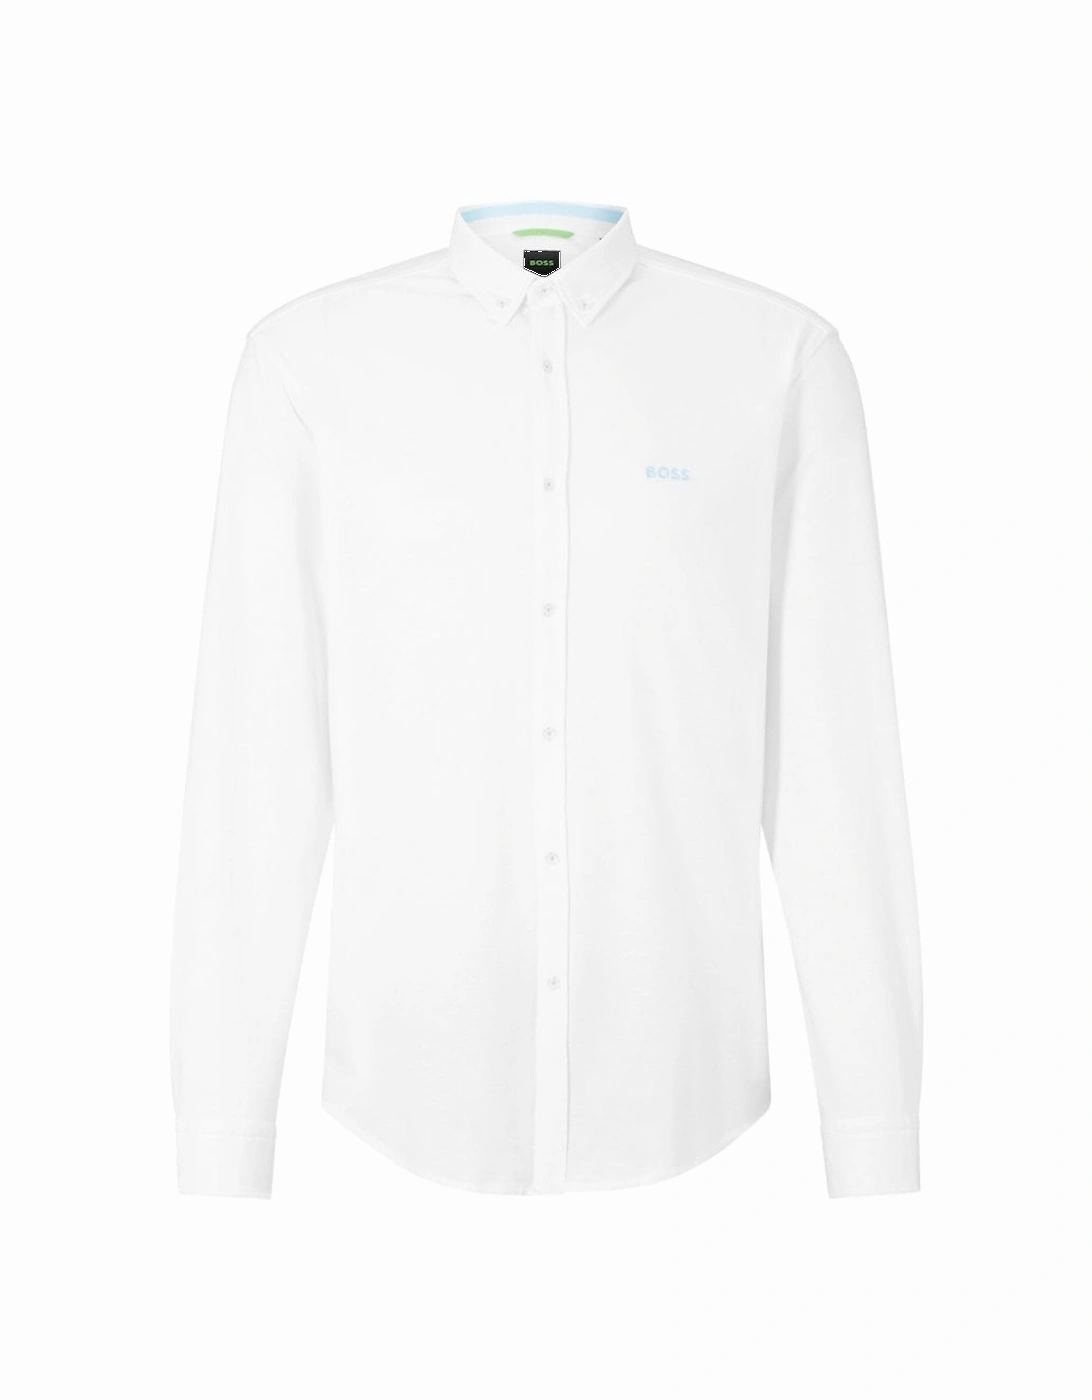 White Biado R Long Sleeved Shirt, 2 of 1